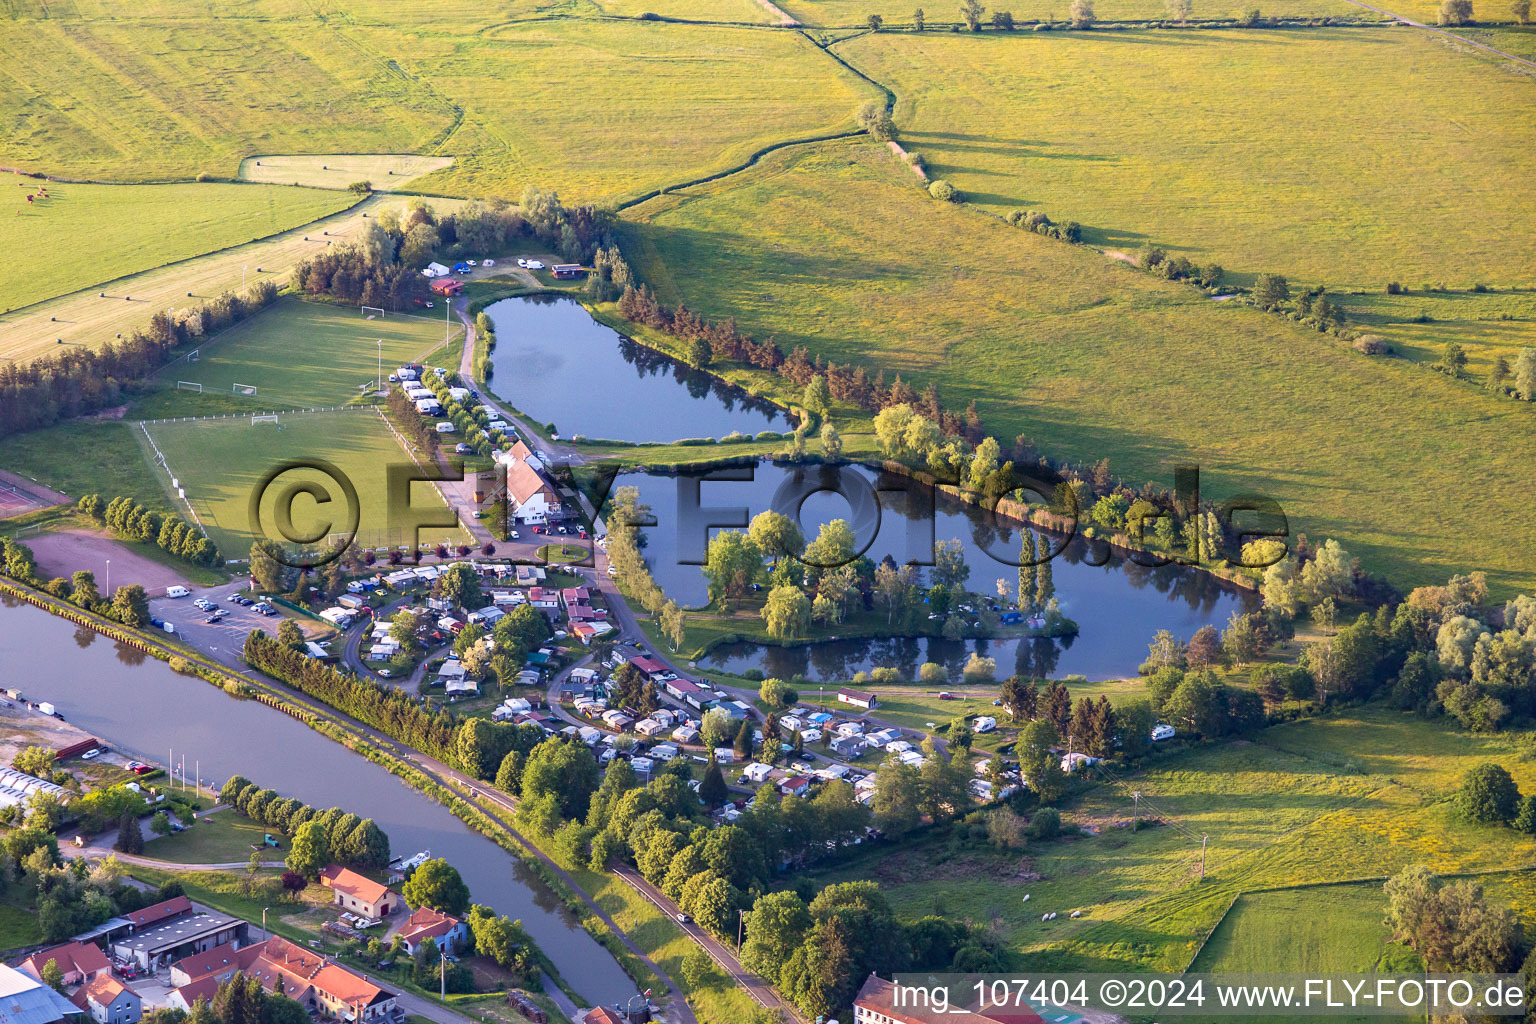 Vue aérienne de Camping Coeur d'Alsace à Harskirchen dans le département Bas Rhin, France